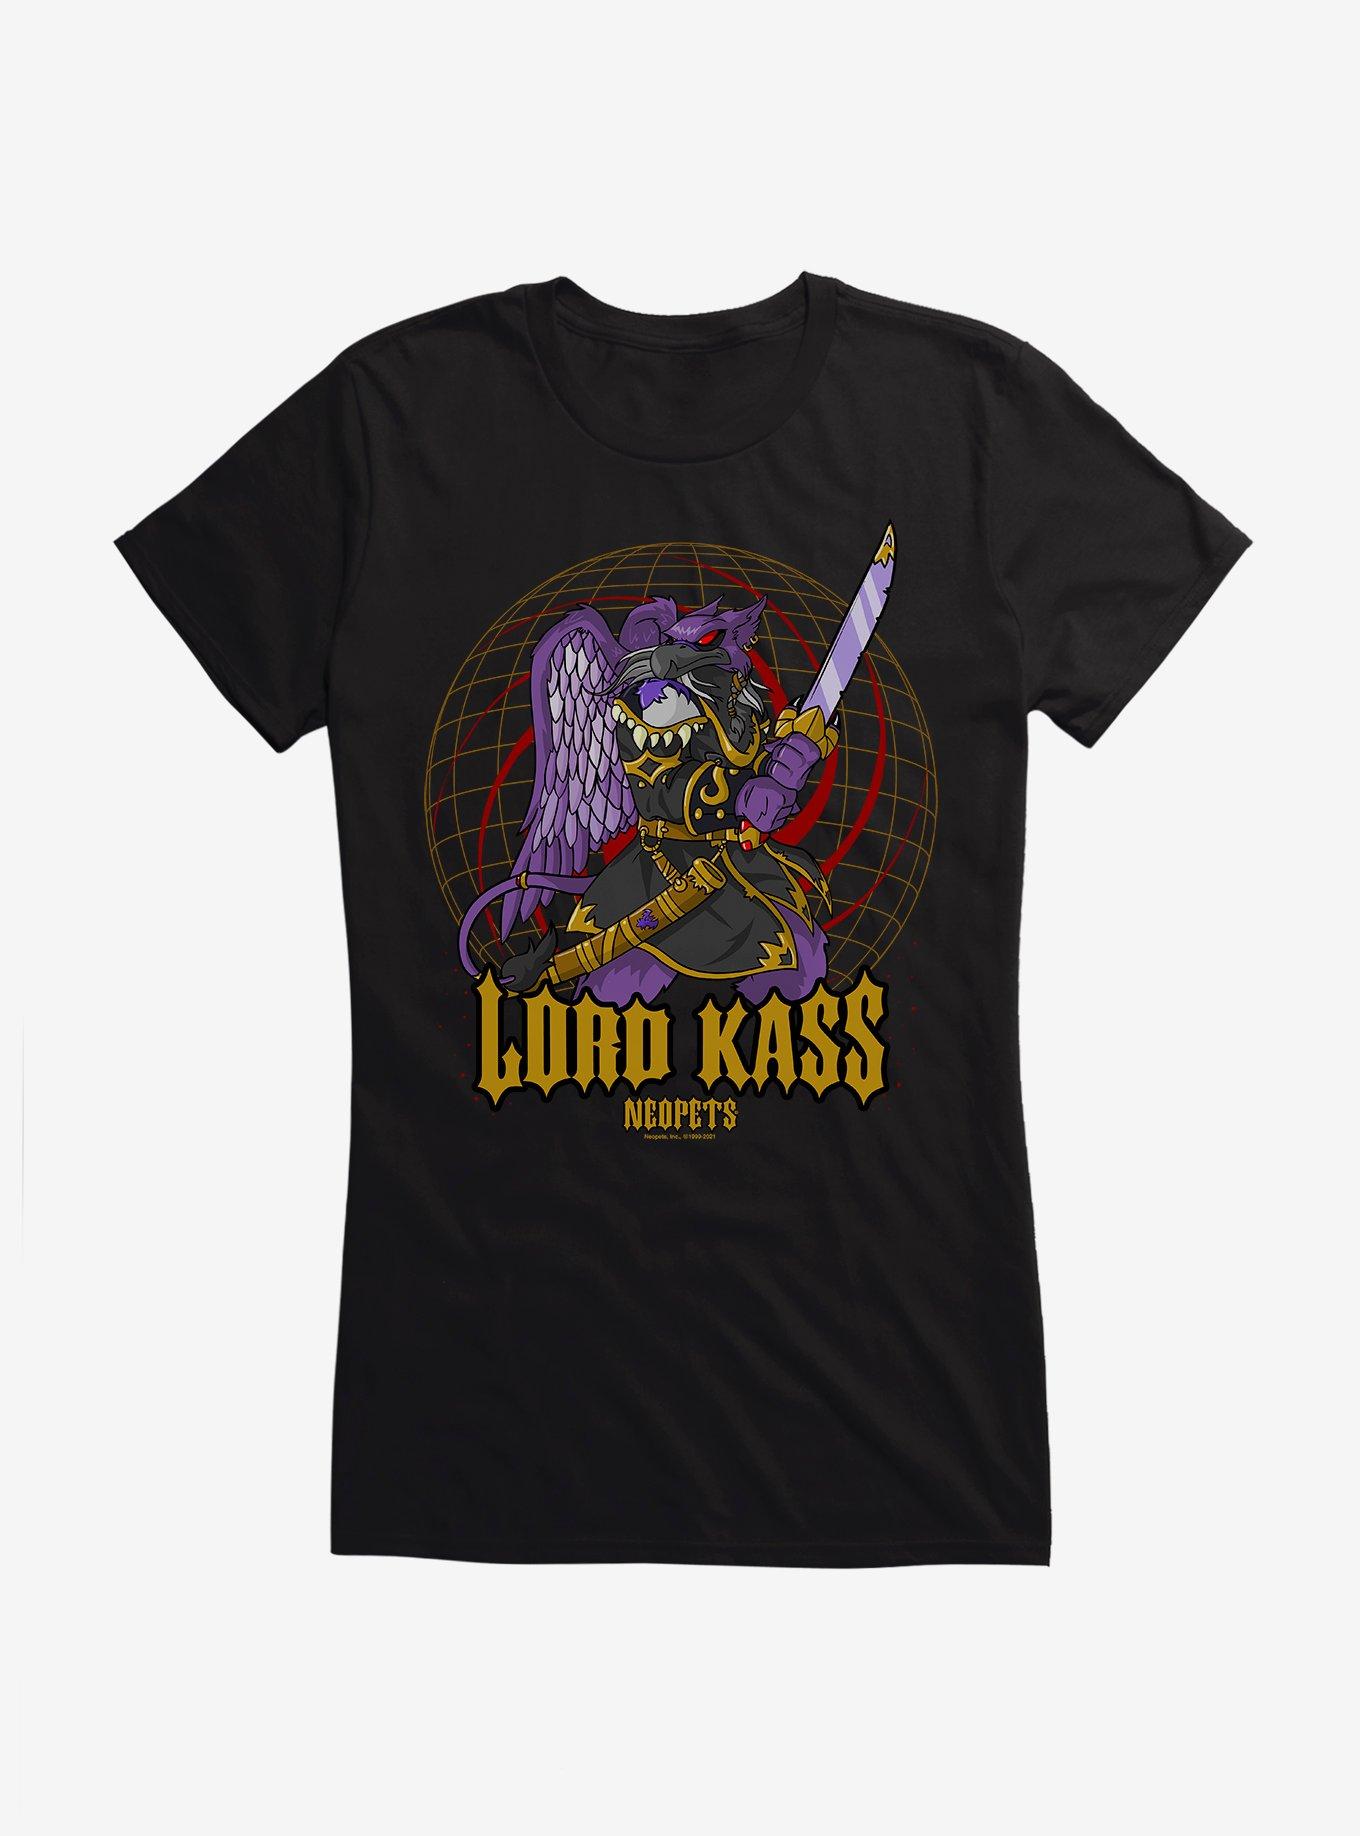 Neopets Lord Kass Girls T-Shirt